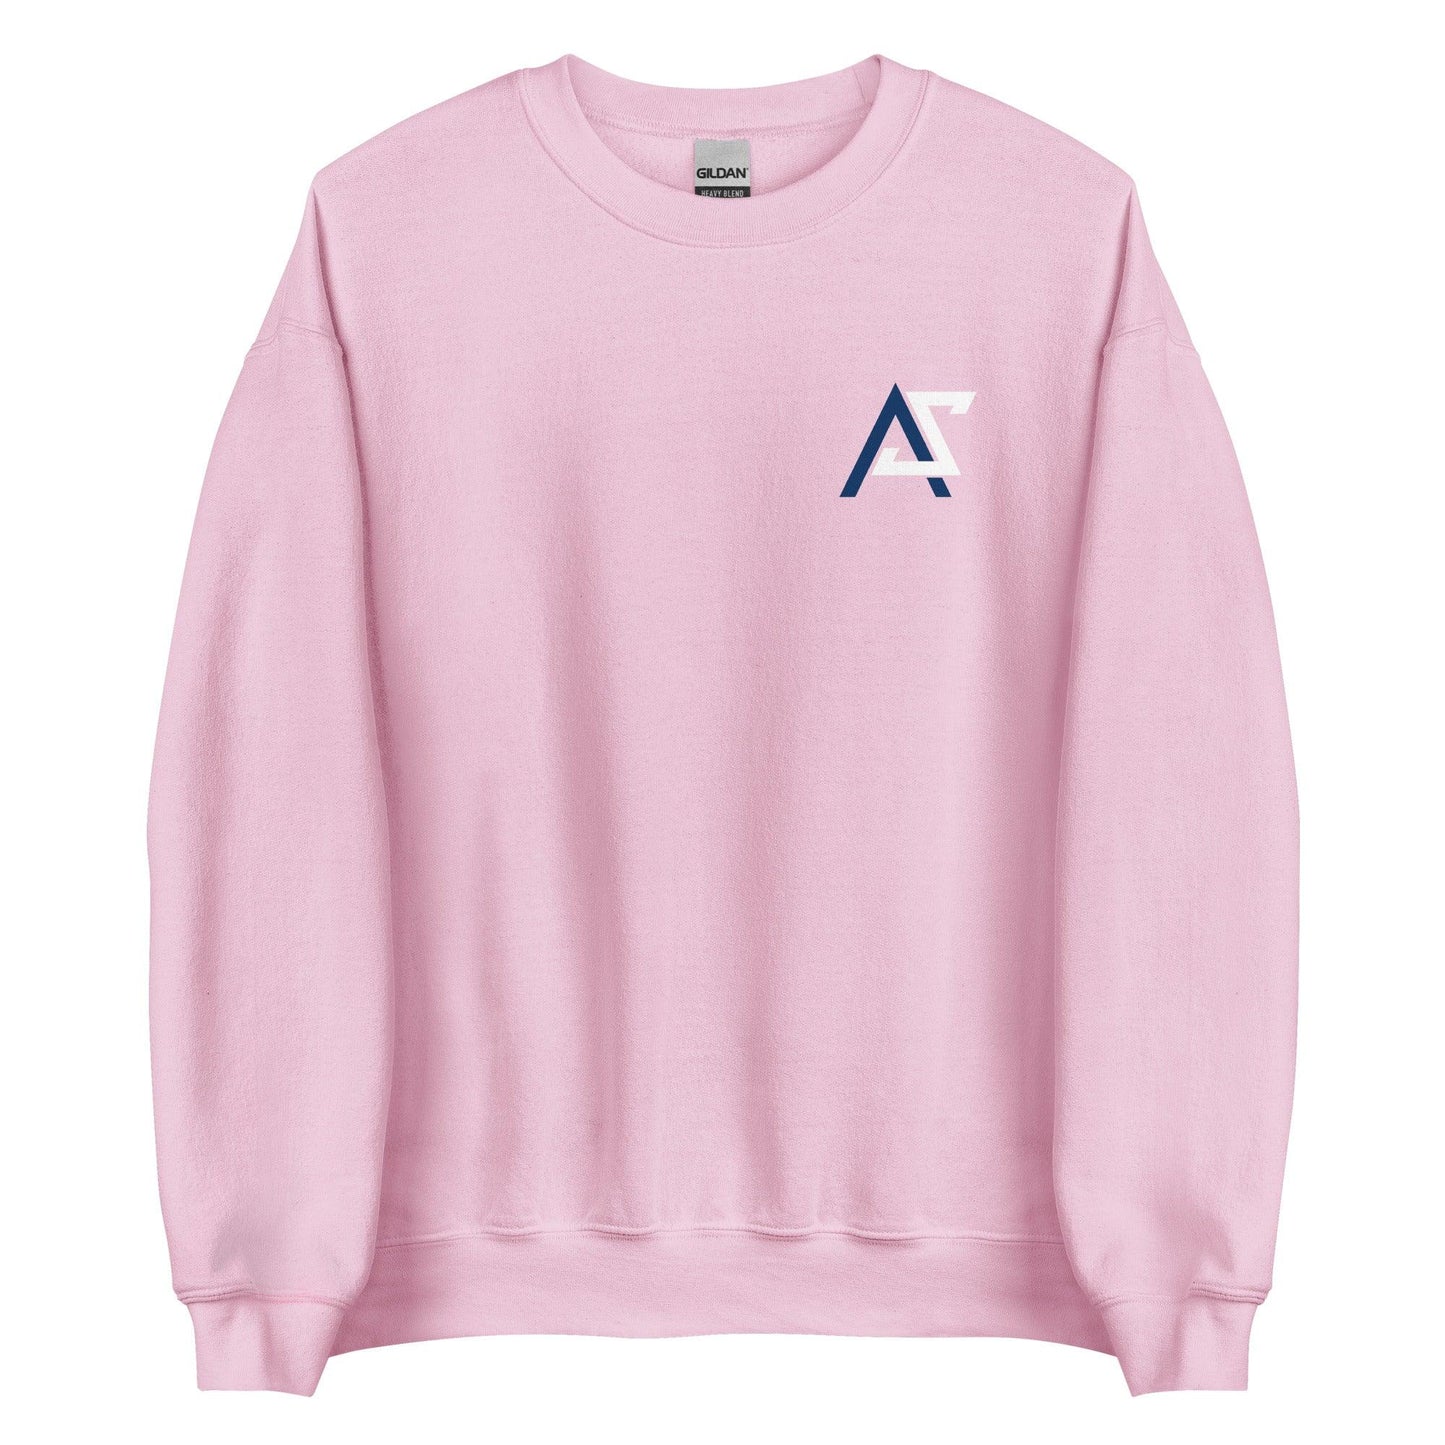 Adrianna Smith "Essential" Sweatshirt - Fan Arch